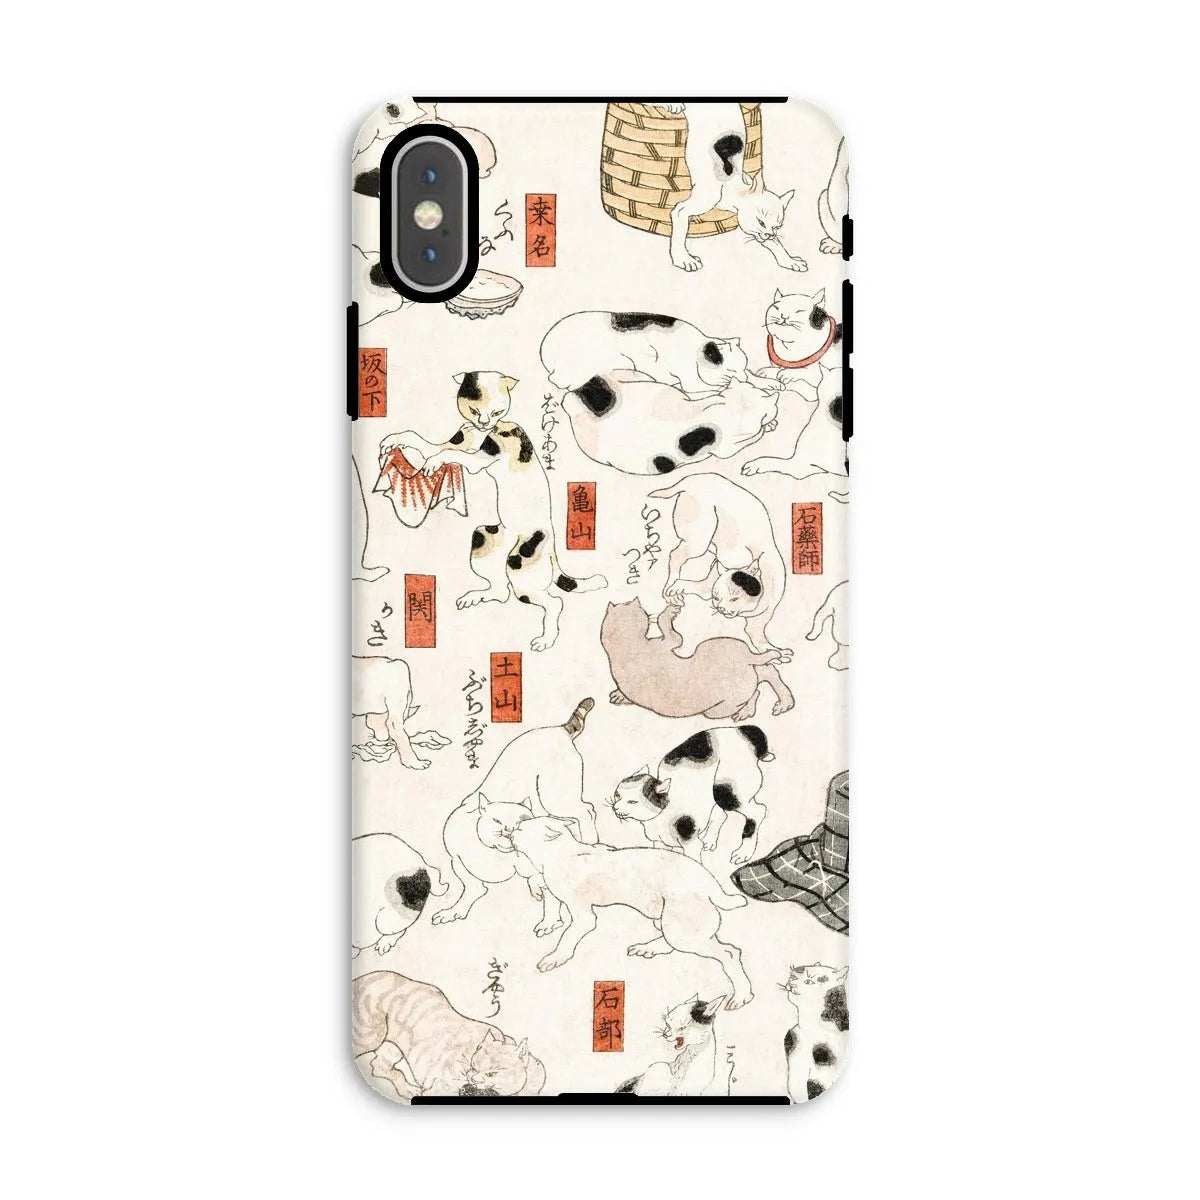 Japanese Cat Aesthetic Art Phone Case - Utagawa Kuniyoshi - Iphone Xs Max / Matte - Mobile Phone Cases - Aesthetic Art